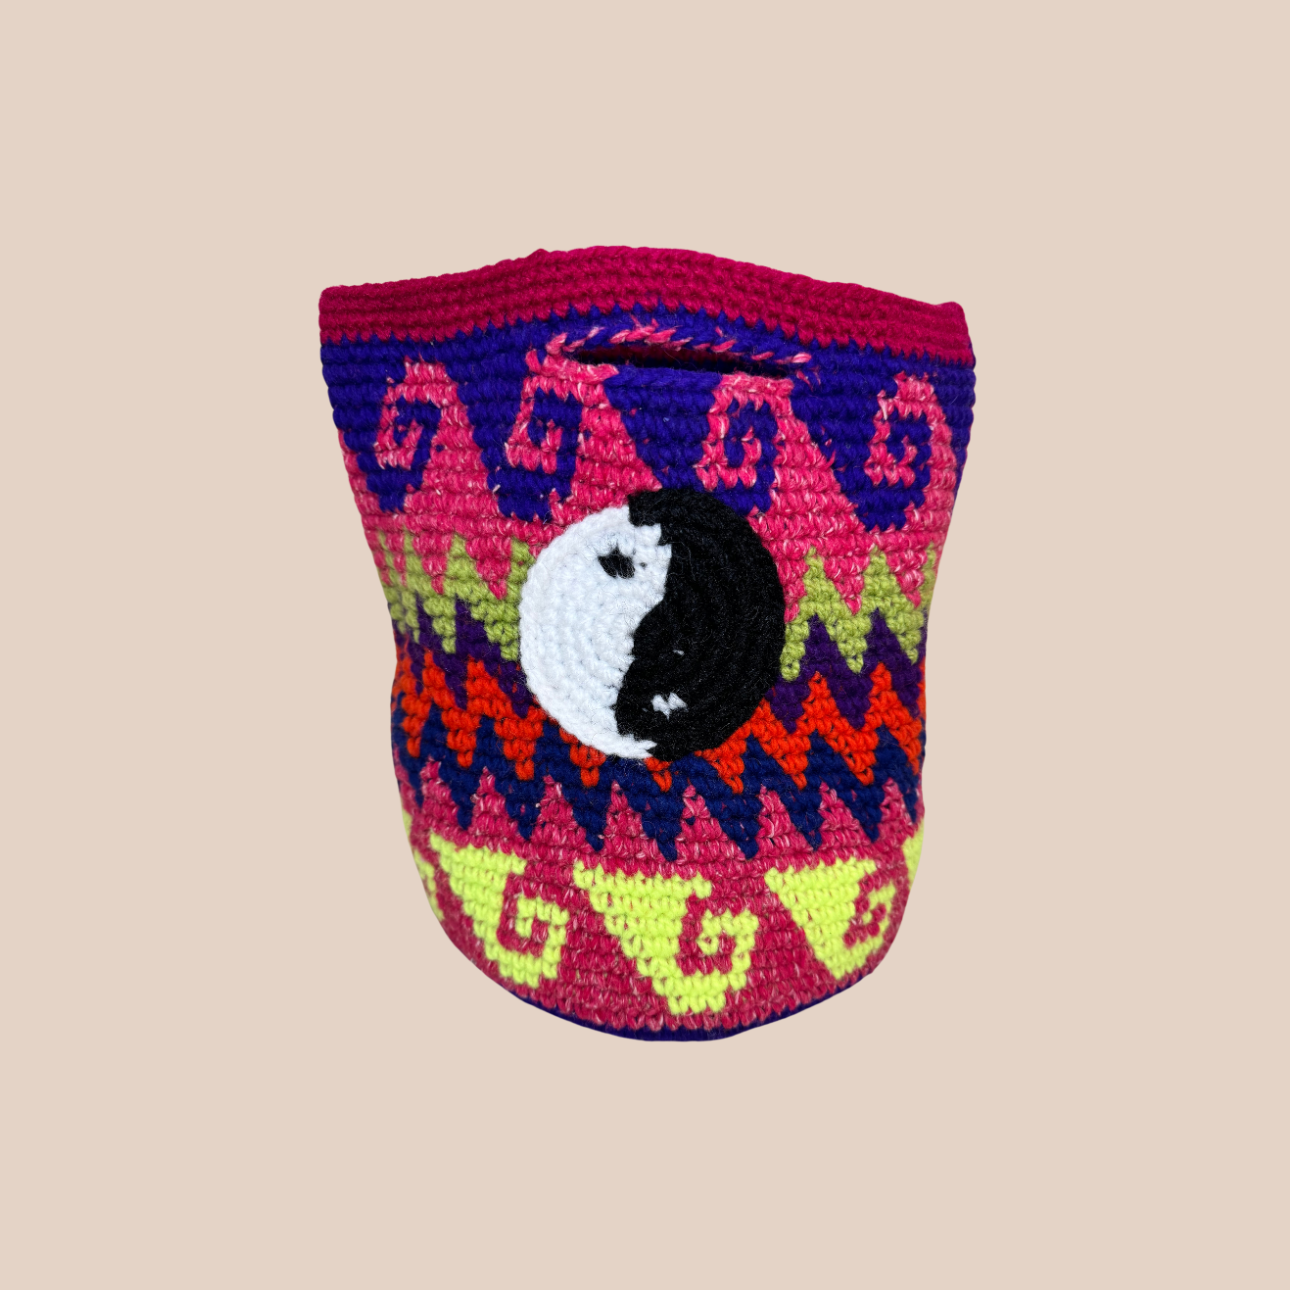  Image du sac motifs yin yang de Maison Badigo, sac en laine crocheté multicolore unique et tendance